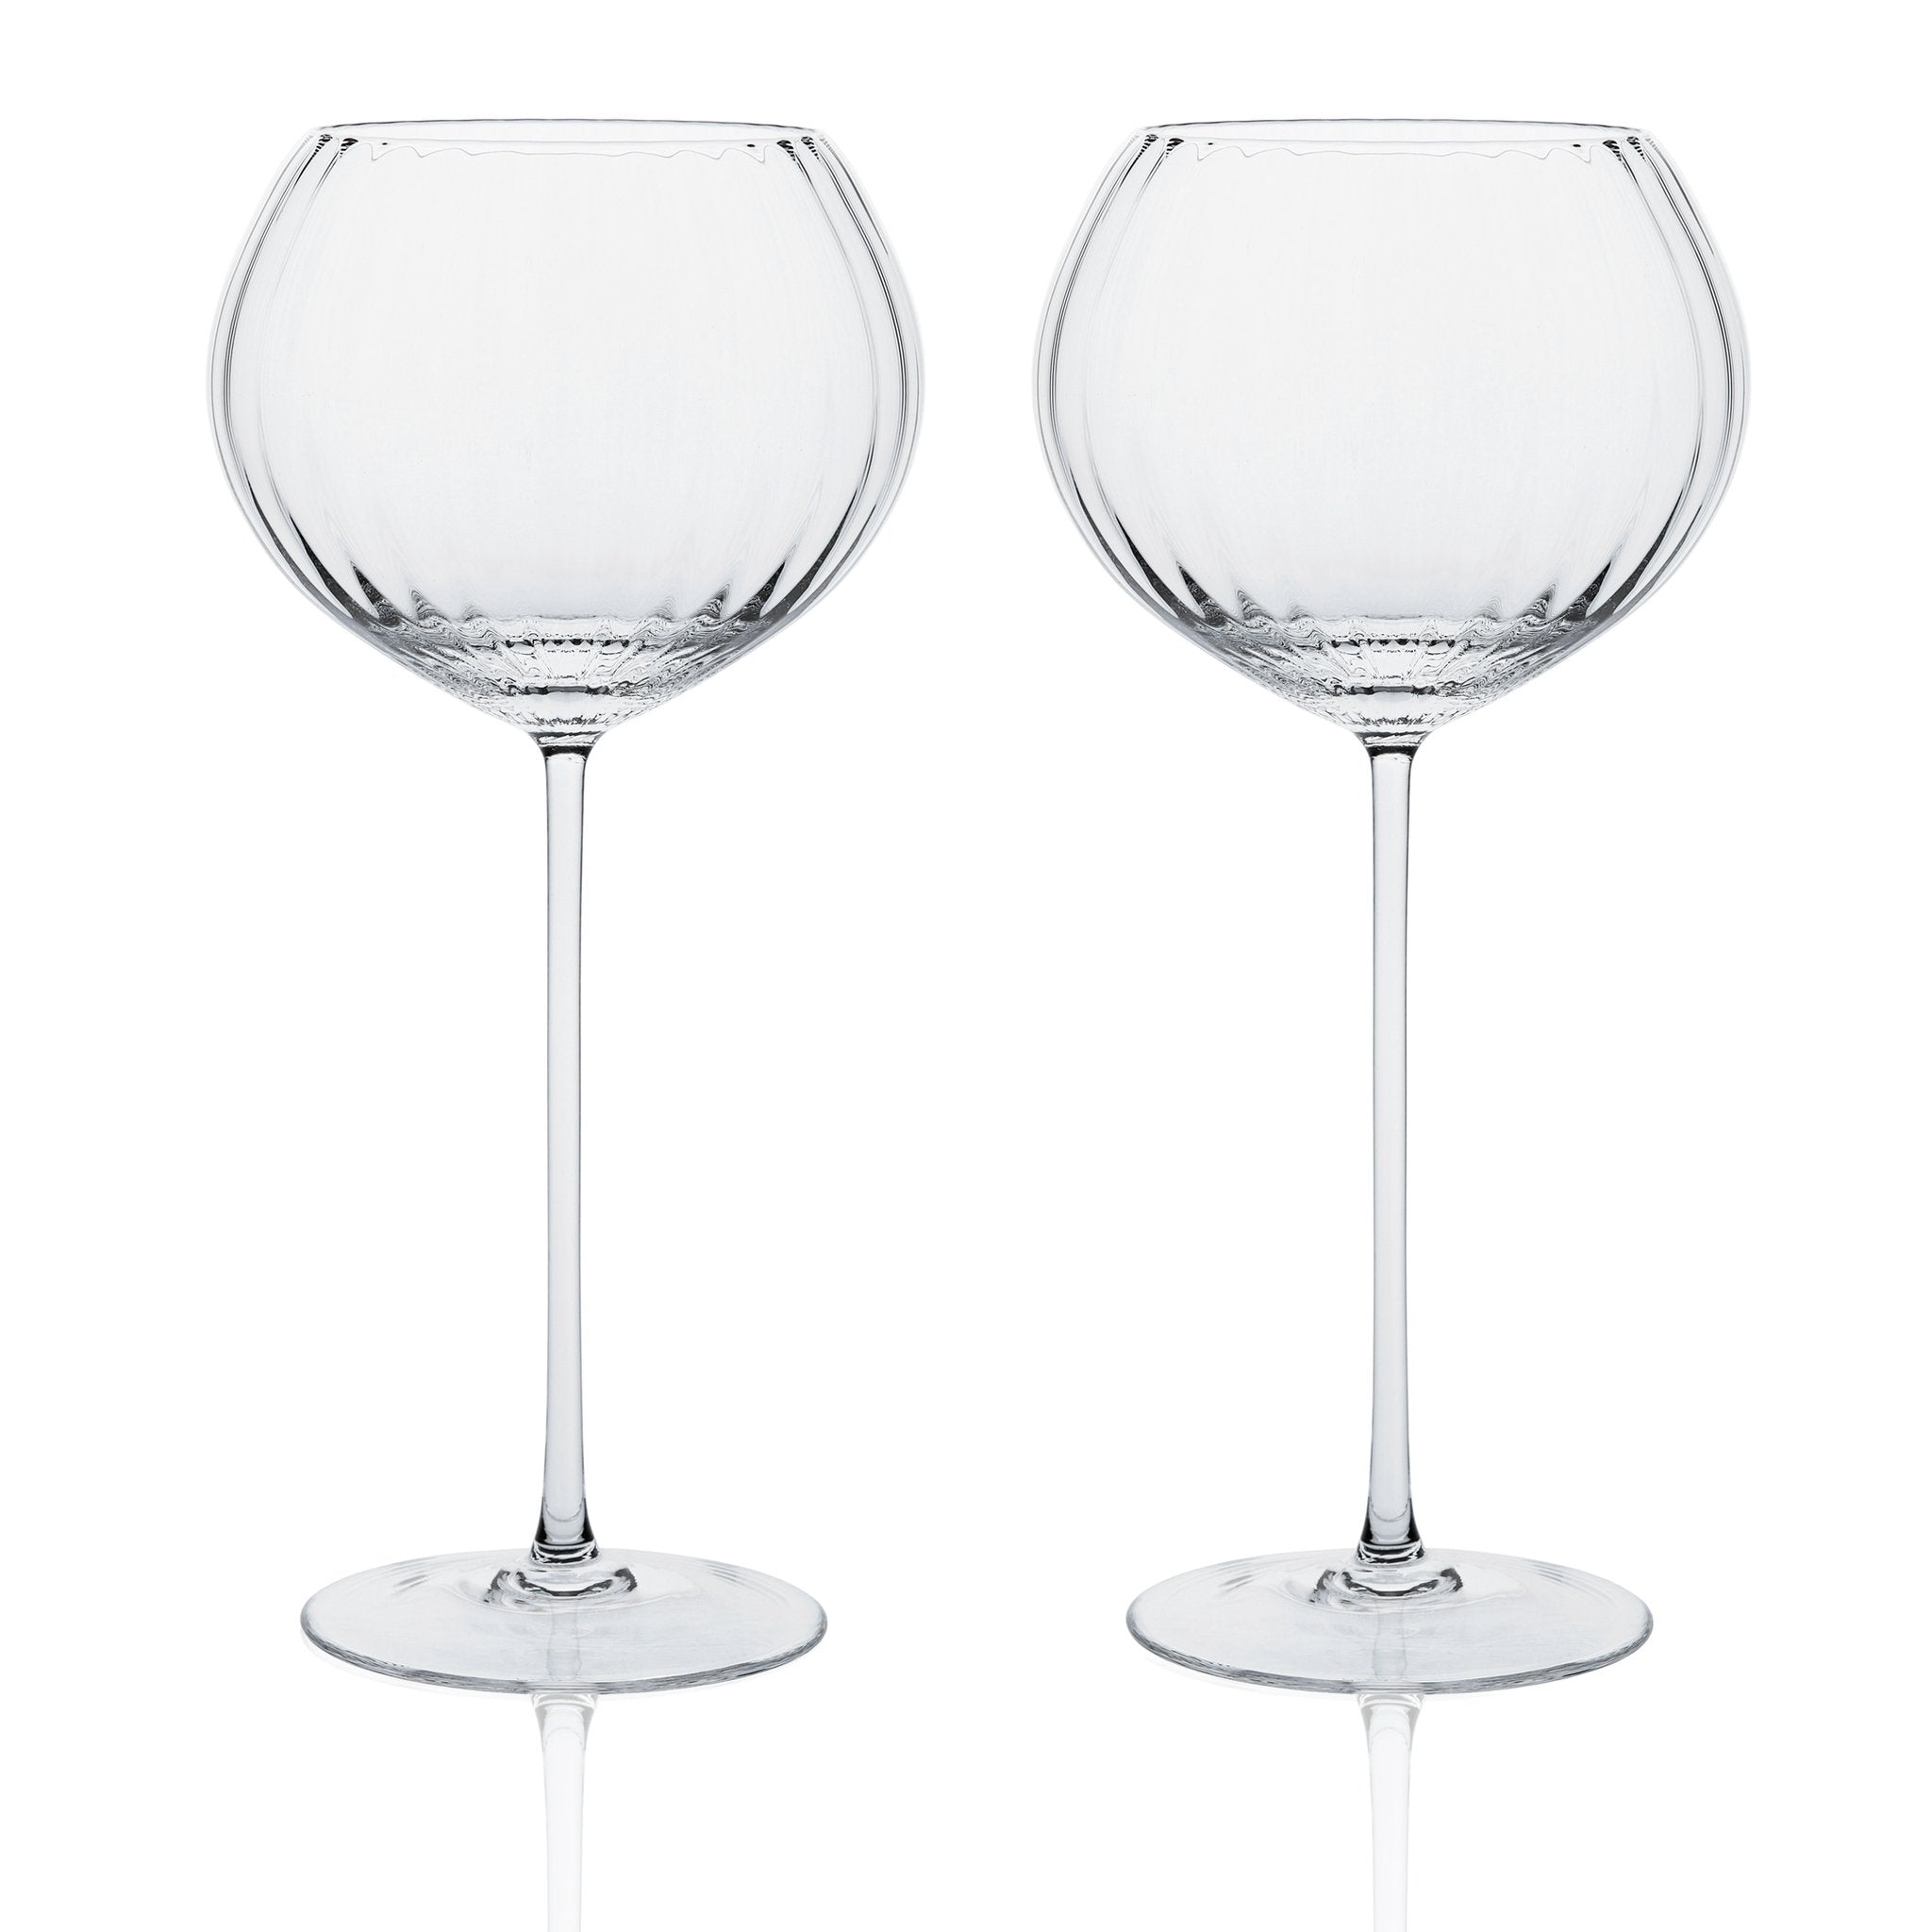 Quinn Amber Red Wine Glasses  Red wine glasses, Elegant wine